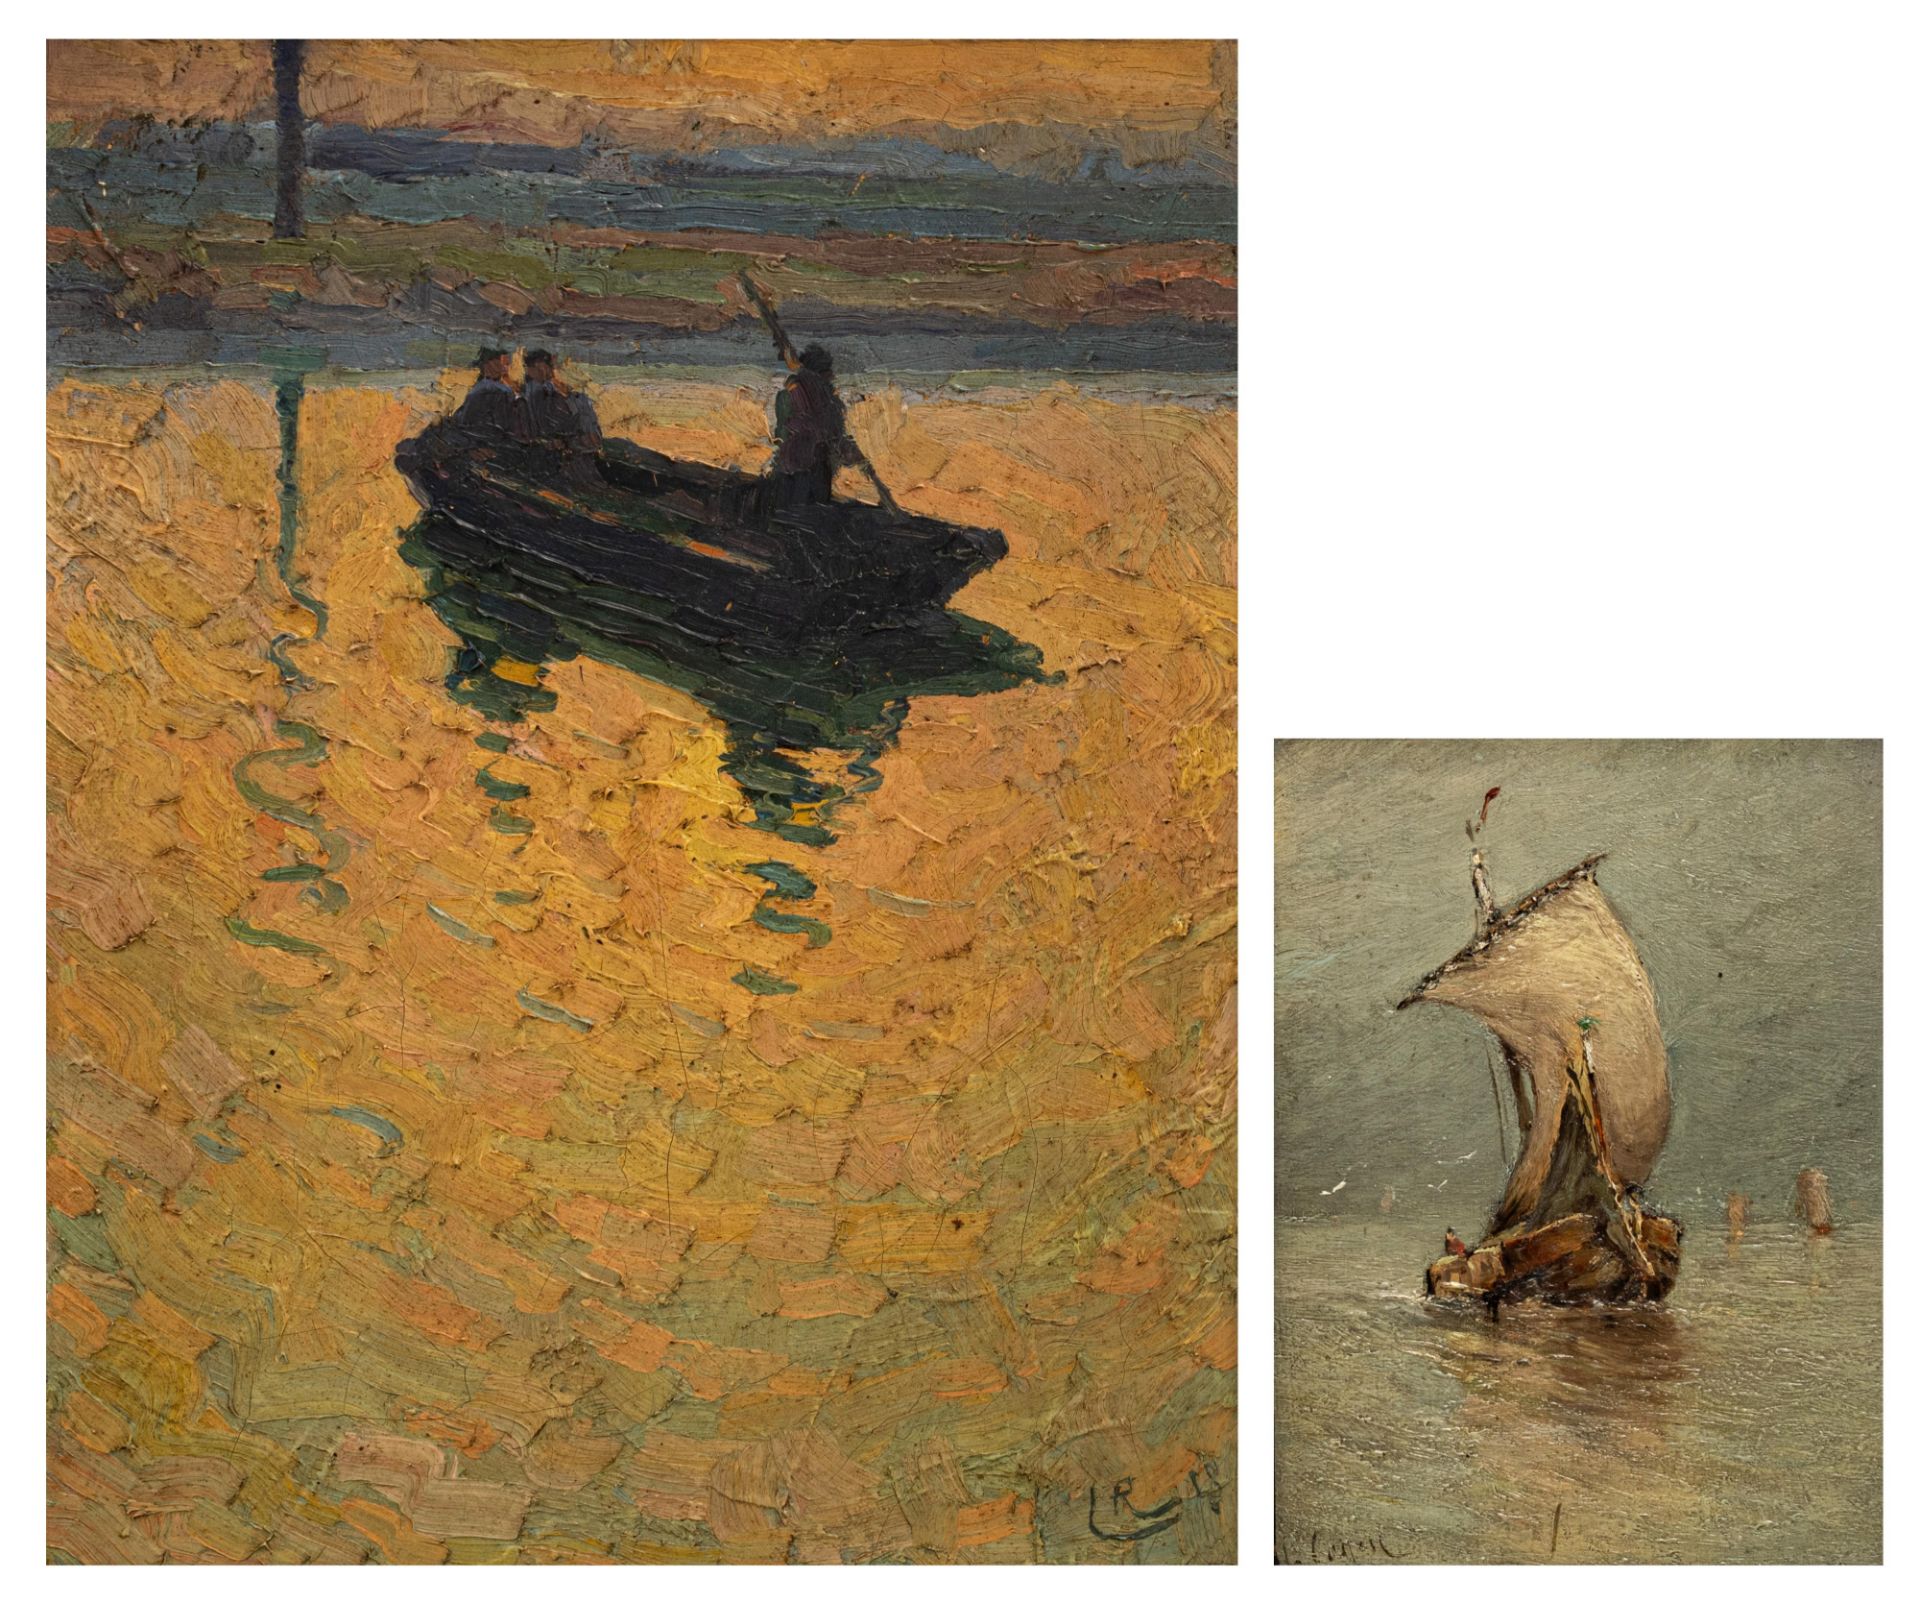 Piet R. Lippens (1890-1981) & Alfons Cogen (1842-1921), 22,5 x 28,5 - 12 x 16 cm